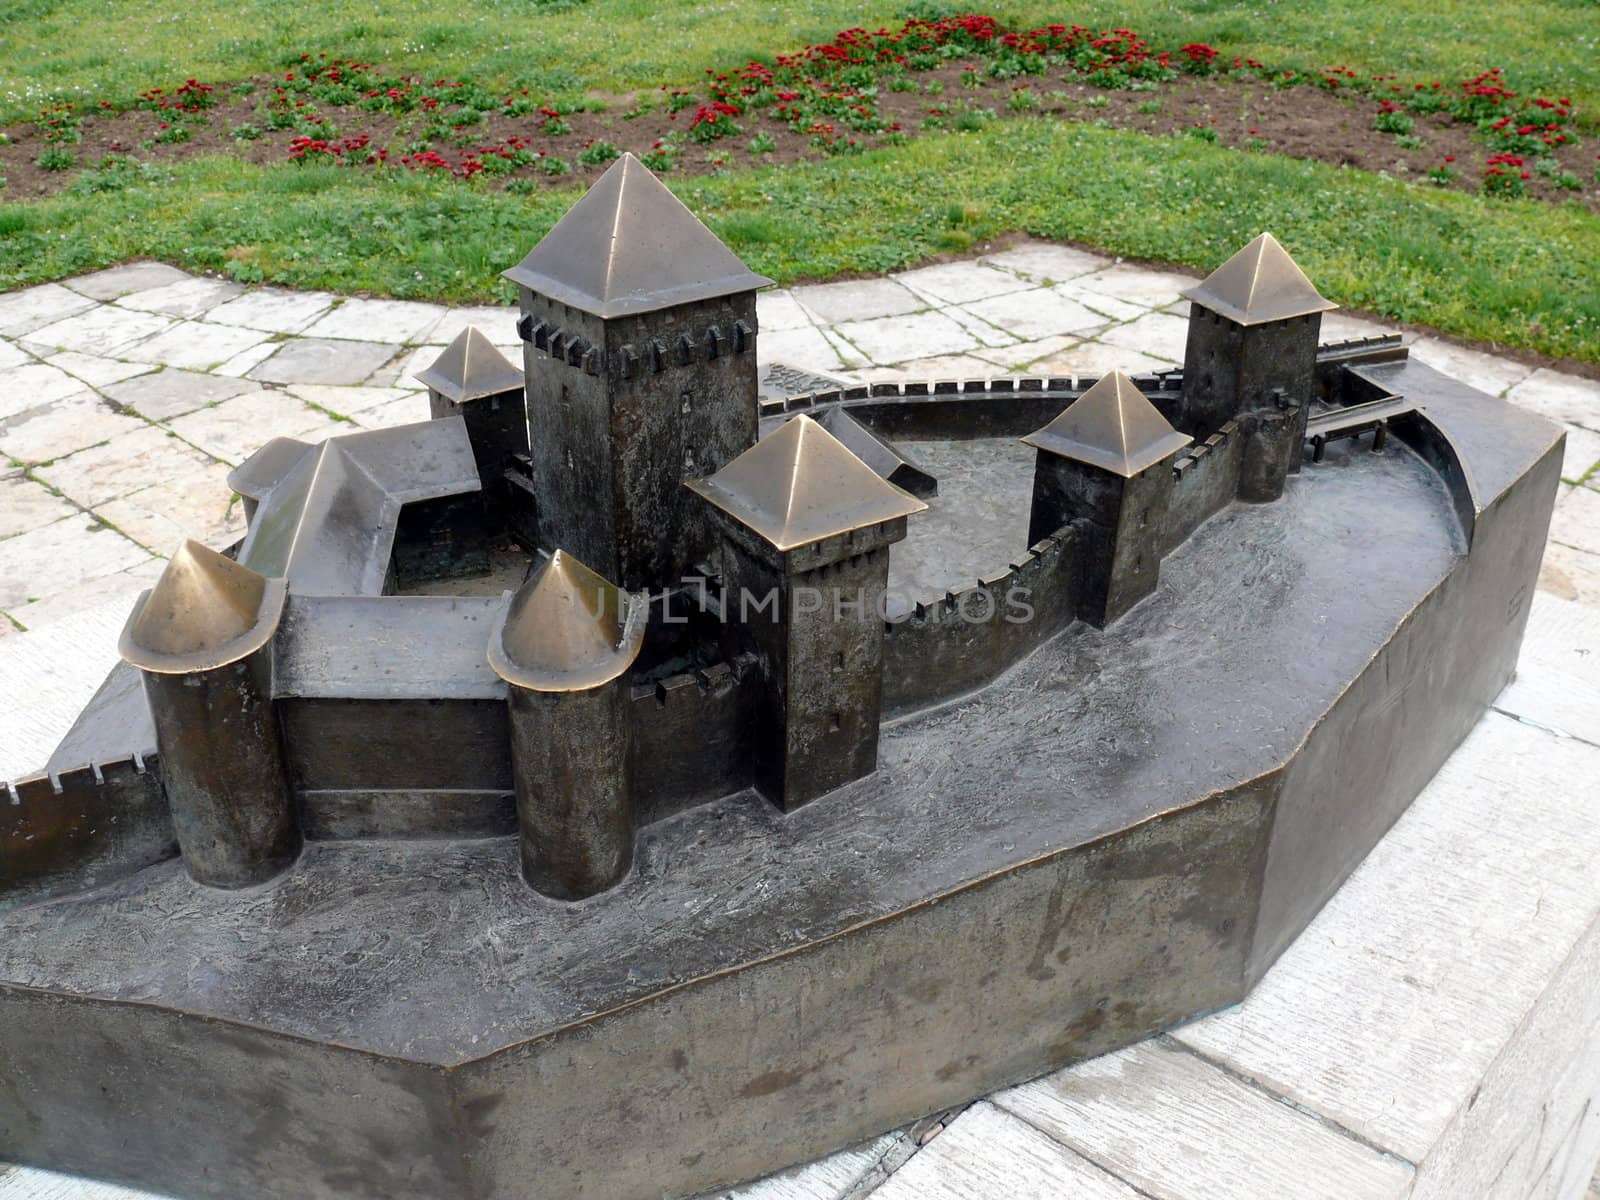 Belgrade fortress model on Kalemegdan, Serbia  by Stoyanov